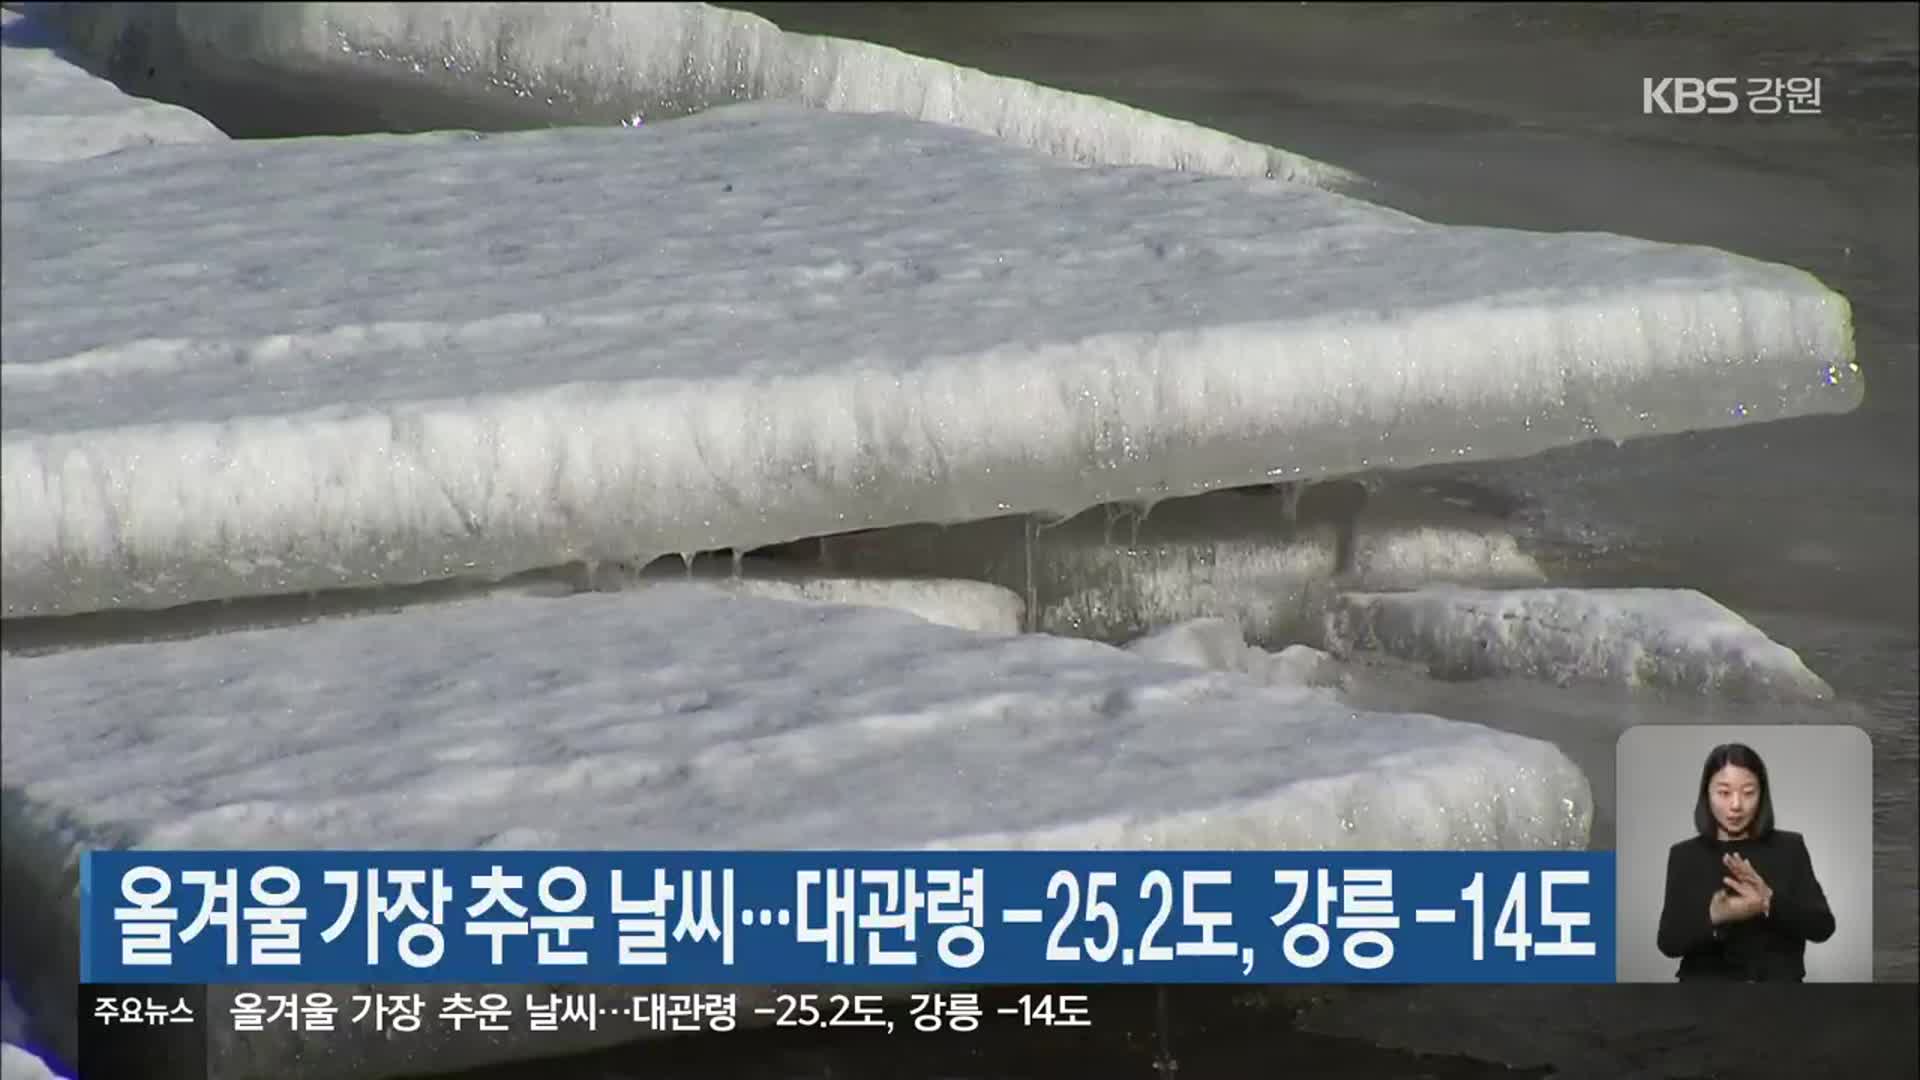 올겨울 가장 추운 날씨…대관령 -25.2도, 강릉 -14도